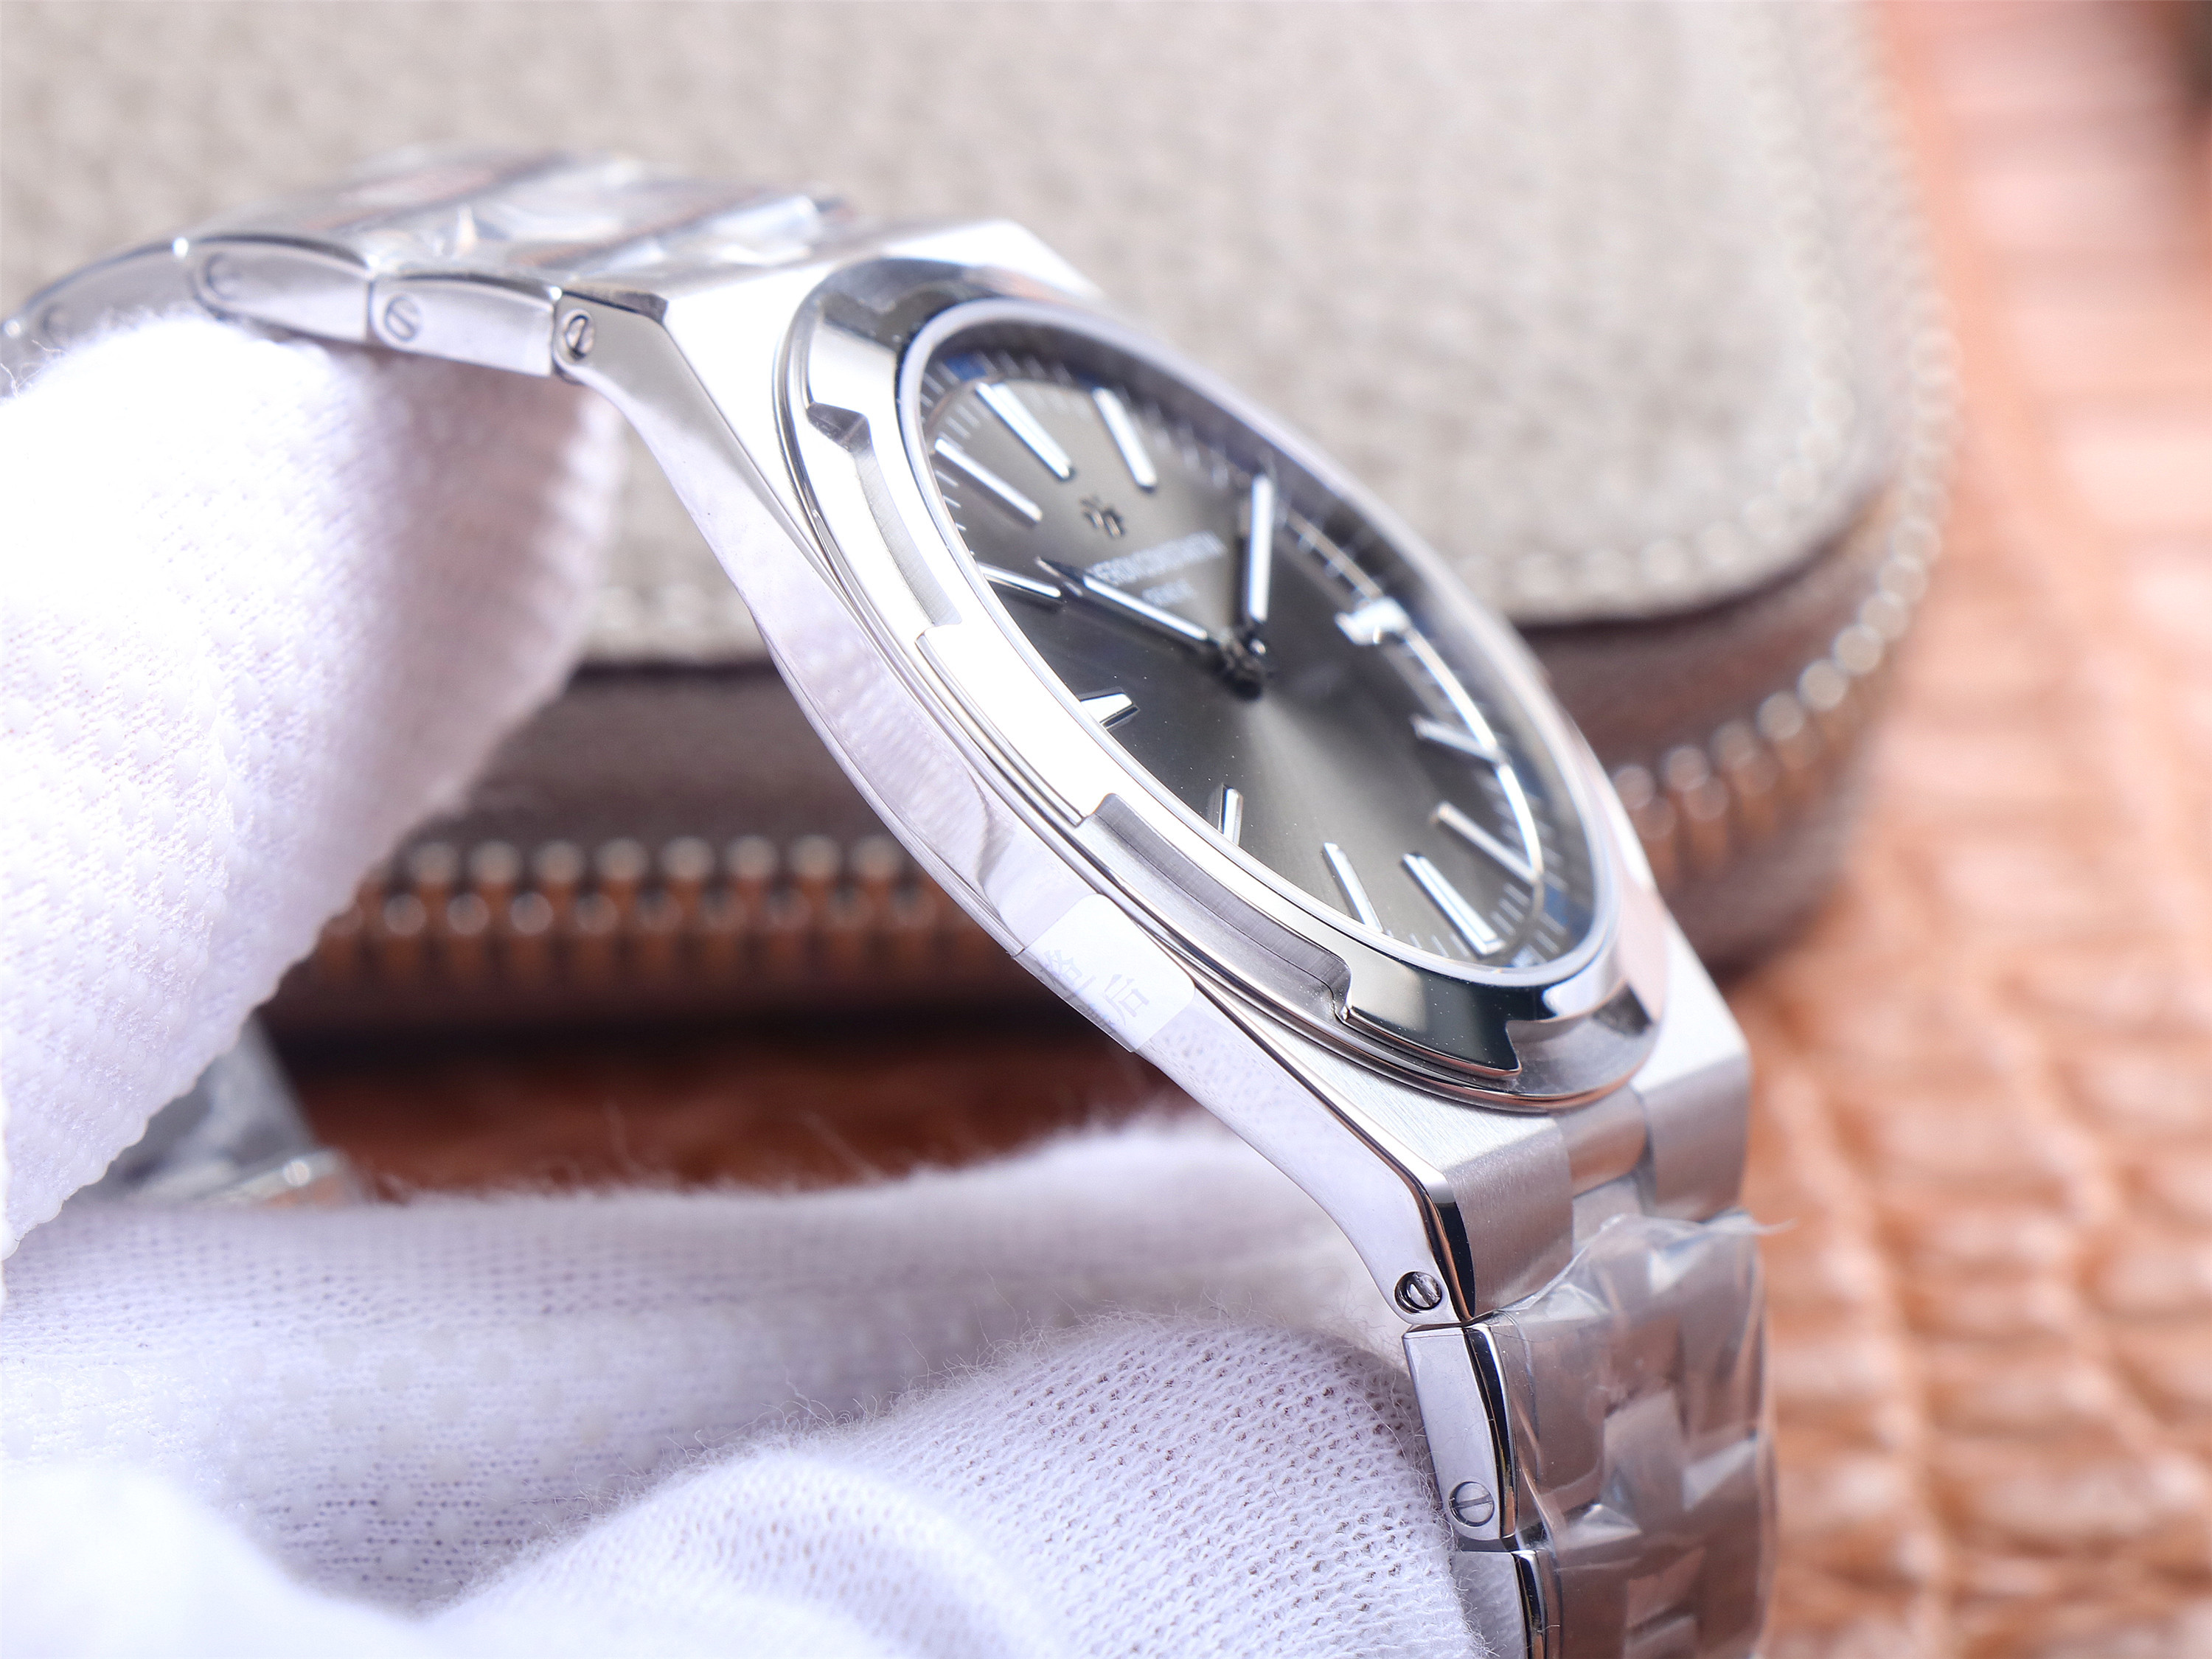 江詩丹頓縱橫四海一比一一比一高仿 xf廠出品江詩丹頓2000V/120G-B122 灰盤￥4580-復刻手錶